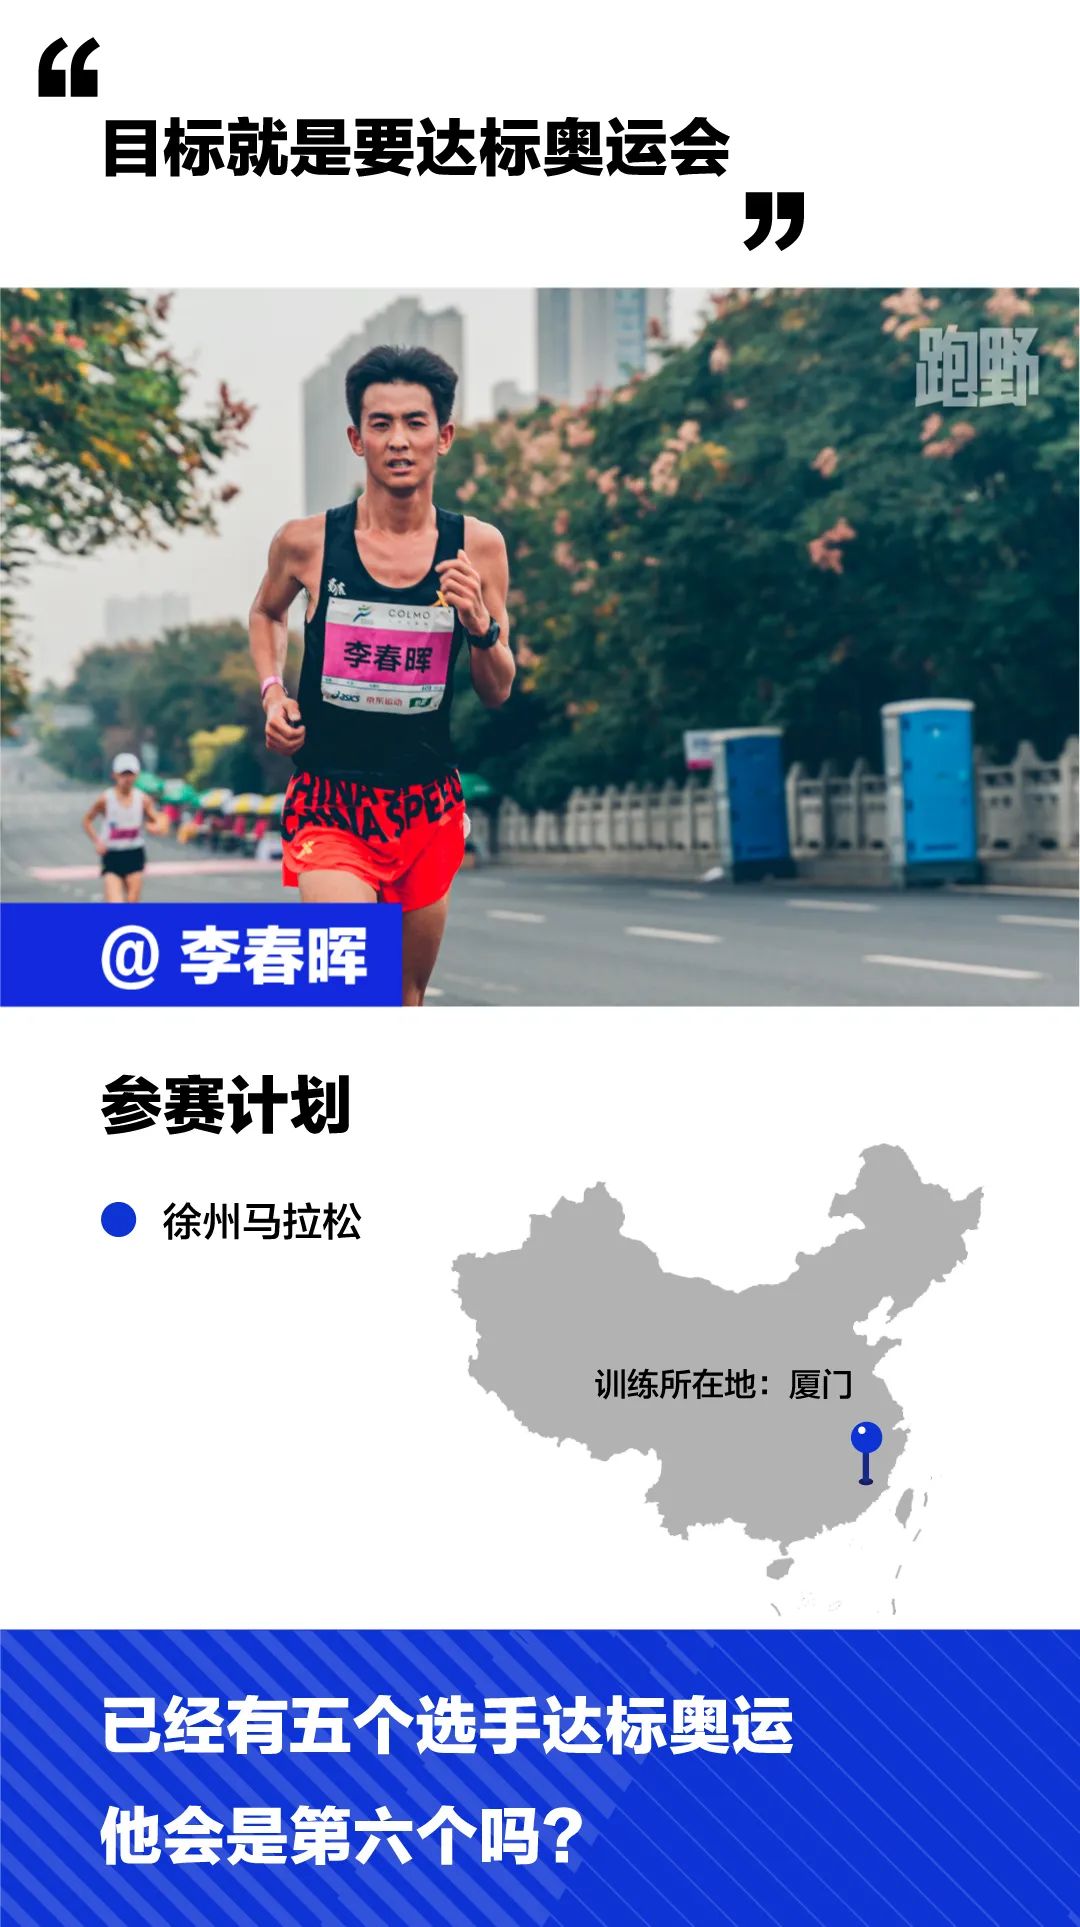 2021年这些中国最强跑者们有什么打算